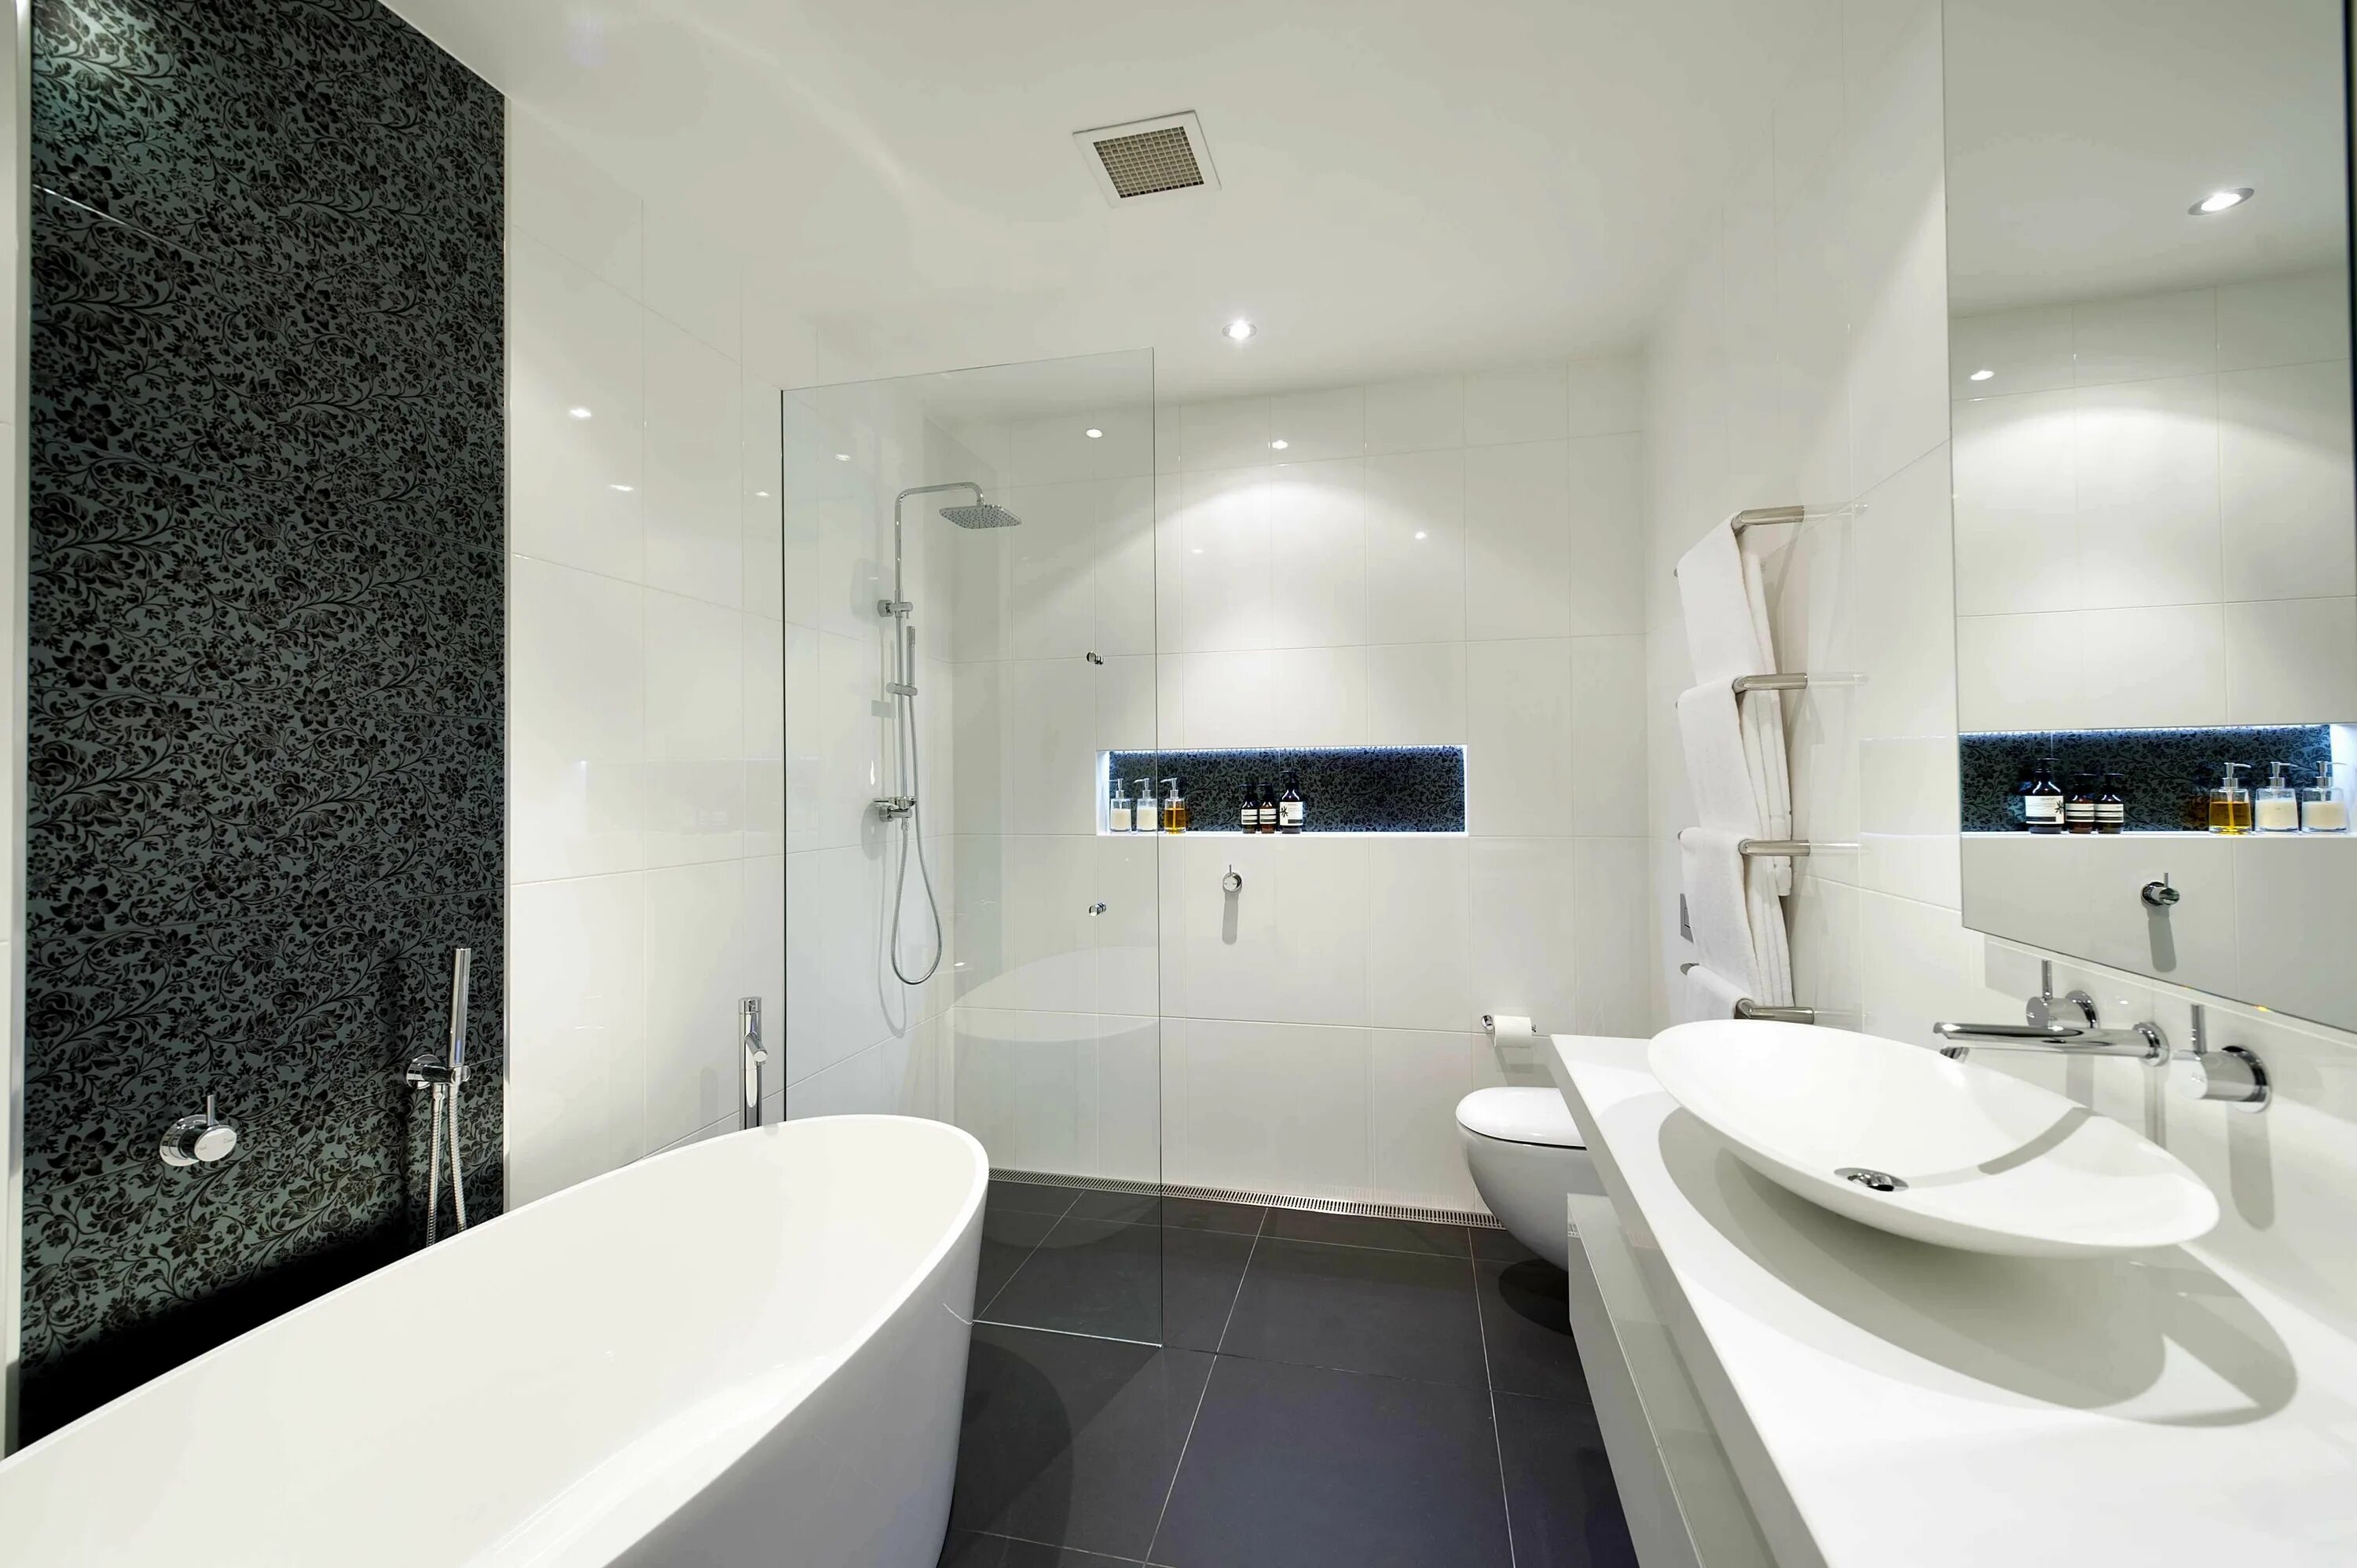 Современная ванная комната в квартире. Современная ванная комната. Красивые Ванные комнаты. Дизайнерские Ванные комнаты. Ванная комната в современном стиле.